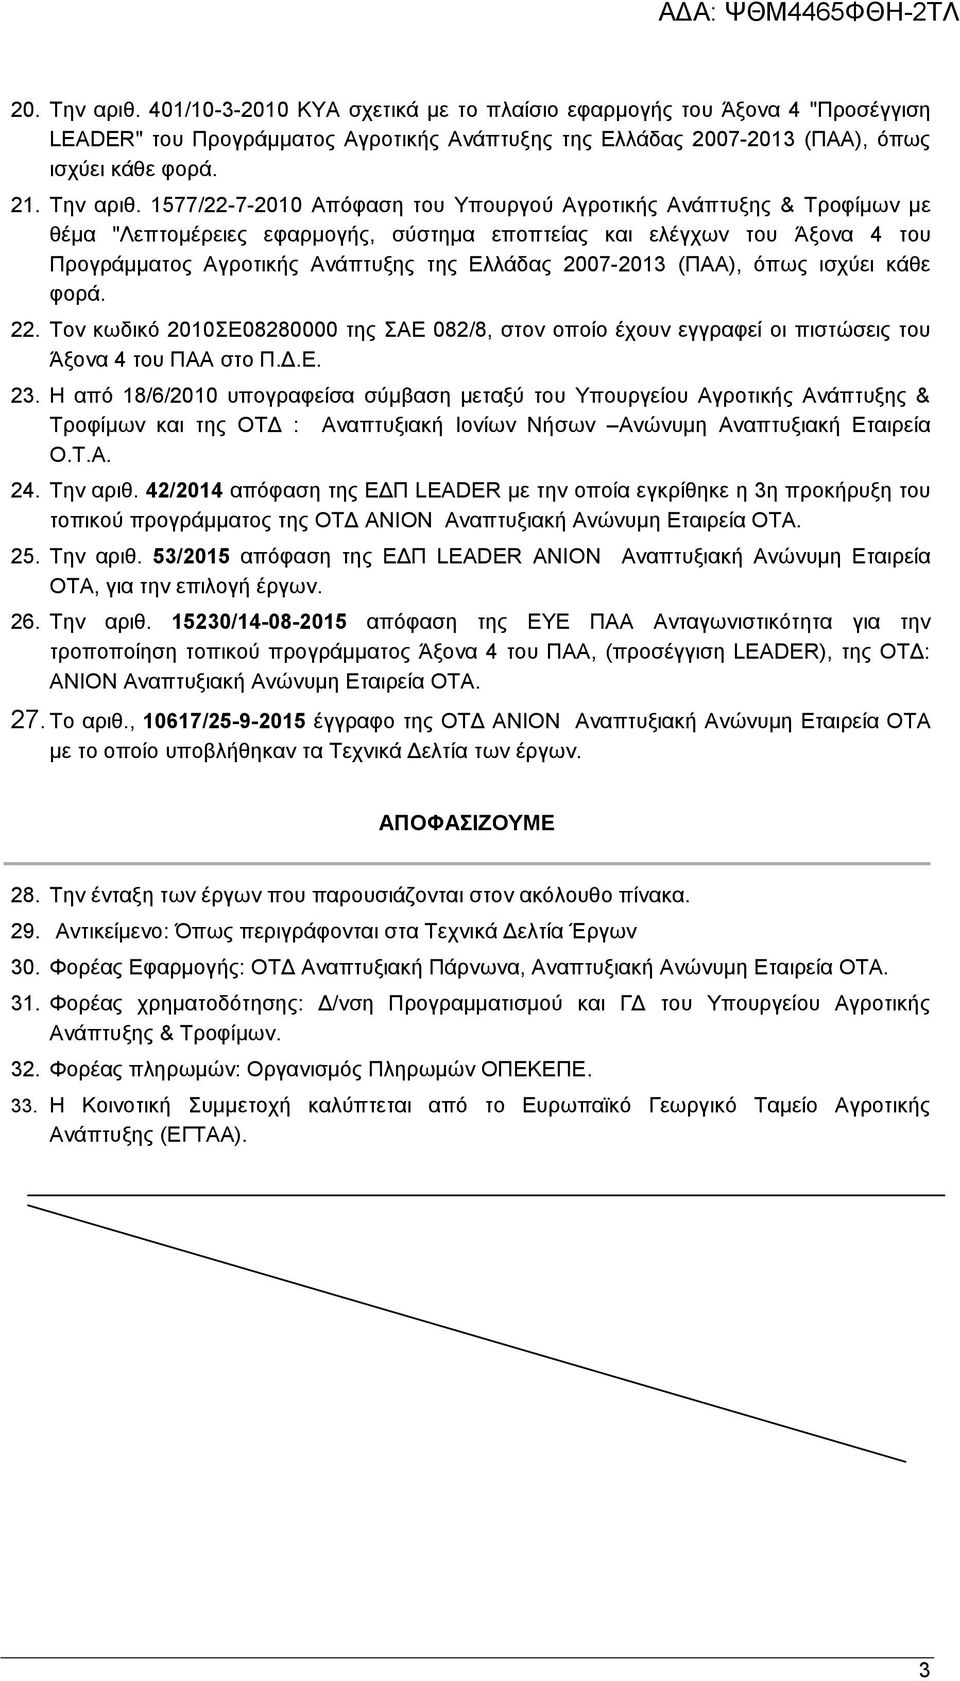 1577/22-7-2010 Απόφαση του Υπουργού Αγροτικής Ανάπτυξης & Τροφίμων με θέμα "Λεπτομέρειες εφαρμογής, σύστημα εποπτείας και ελέγχων του Άξονα 4 του Προγράμματος Αγροτικής Ανάπτυξης της Ελλάδας